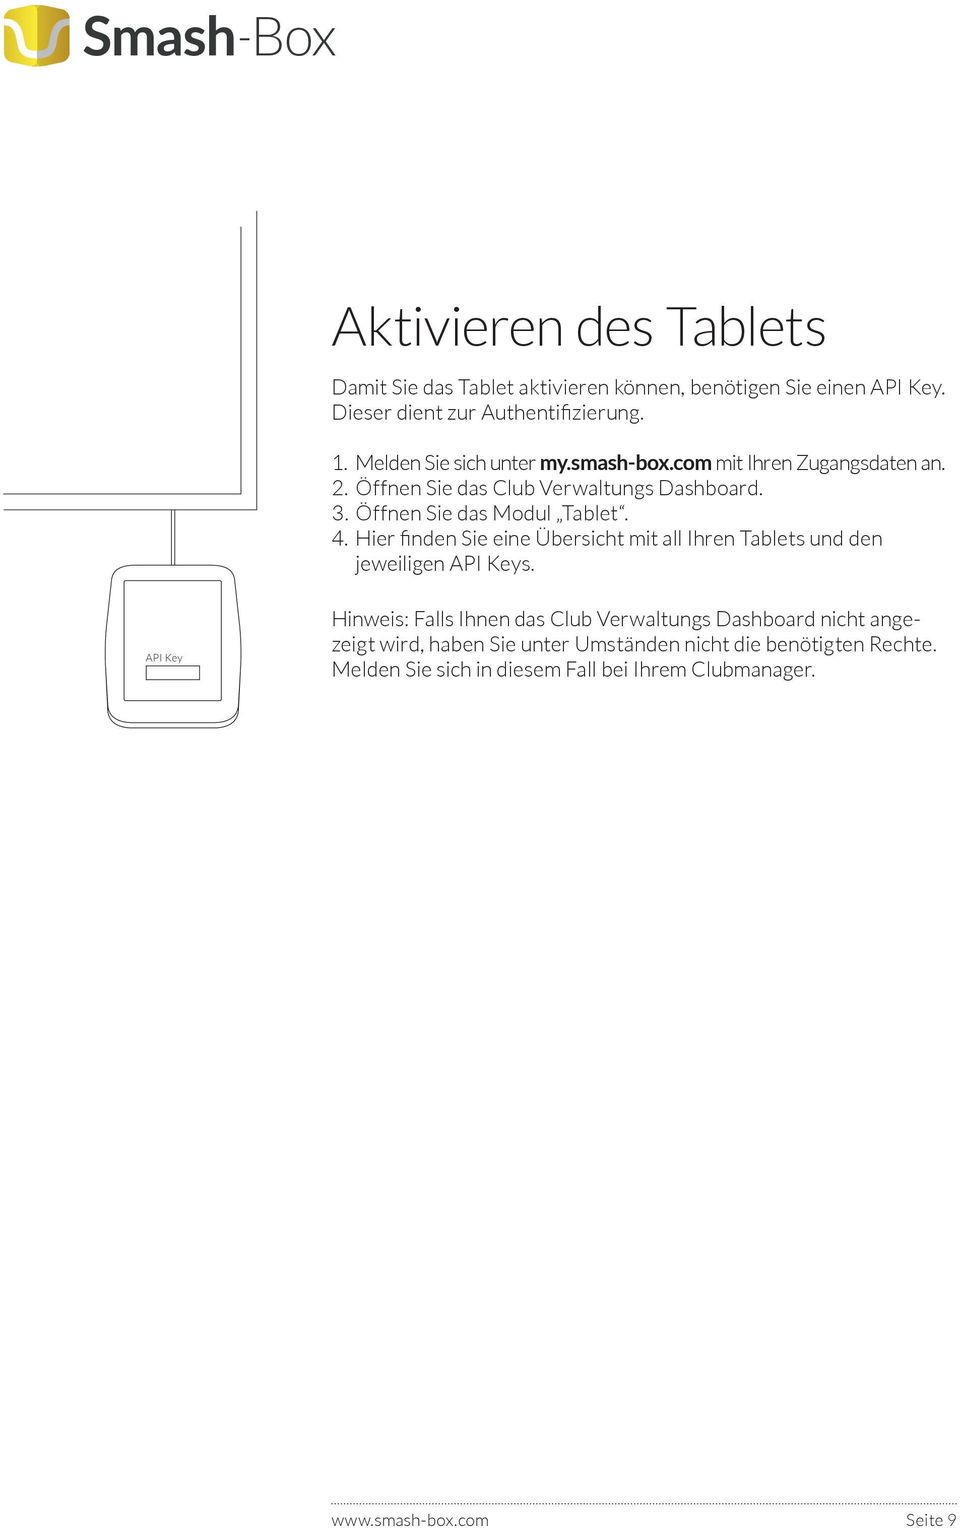 Hier finden Sie eine Übersicht mit all Ihren Tablets und den jeweiligen API Keys.